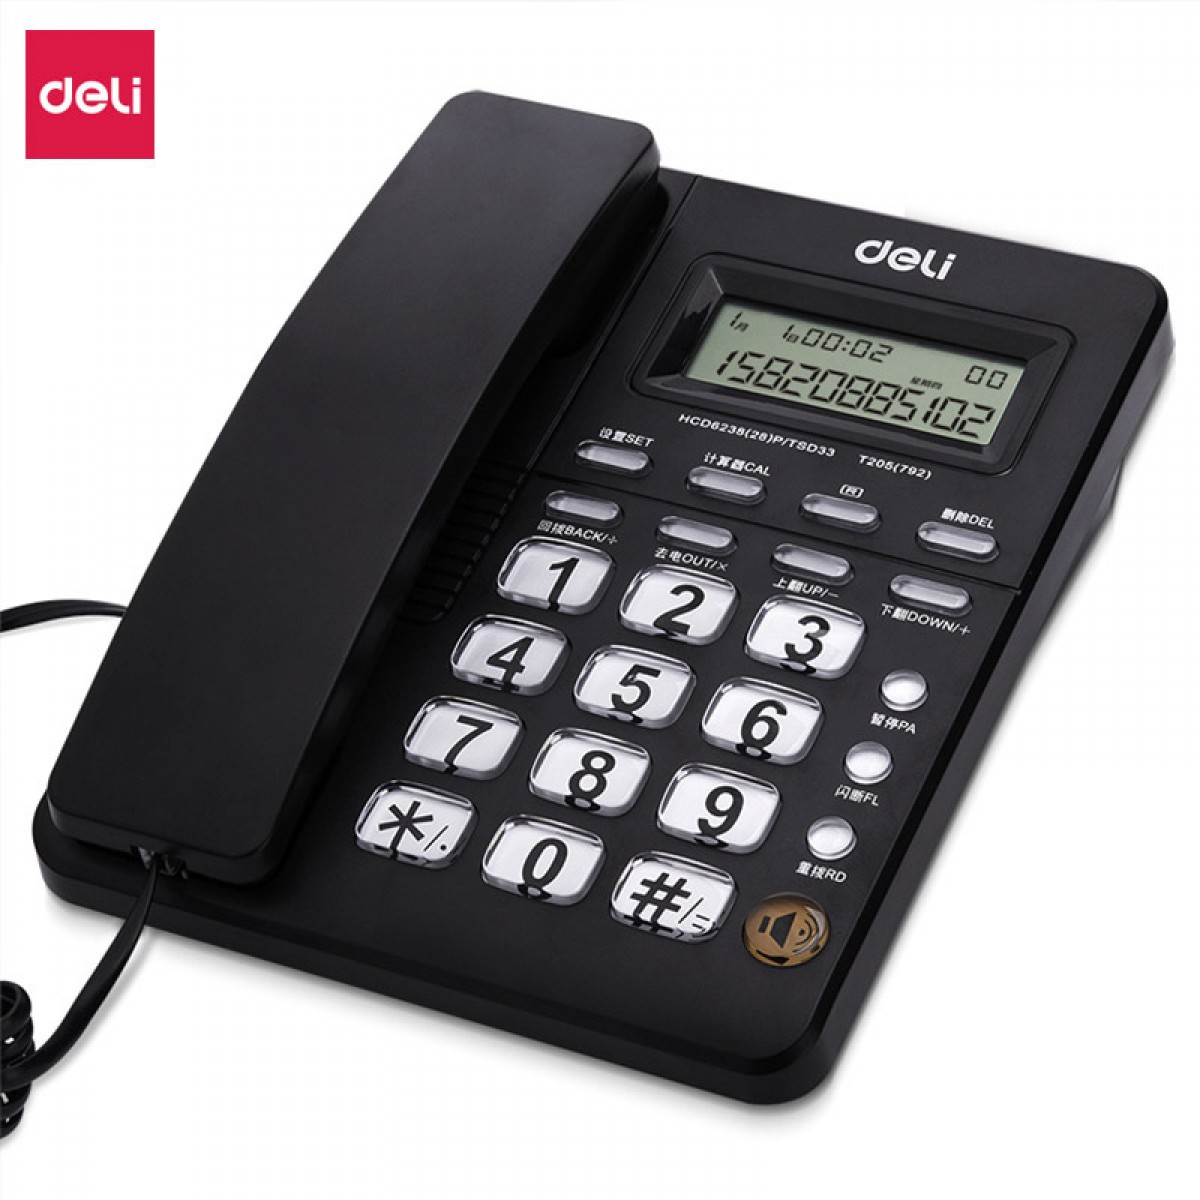 得力电话机792 商务电话机 办公桌面型 前台用品商务家用话机